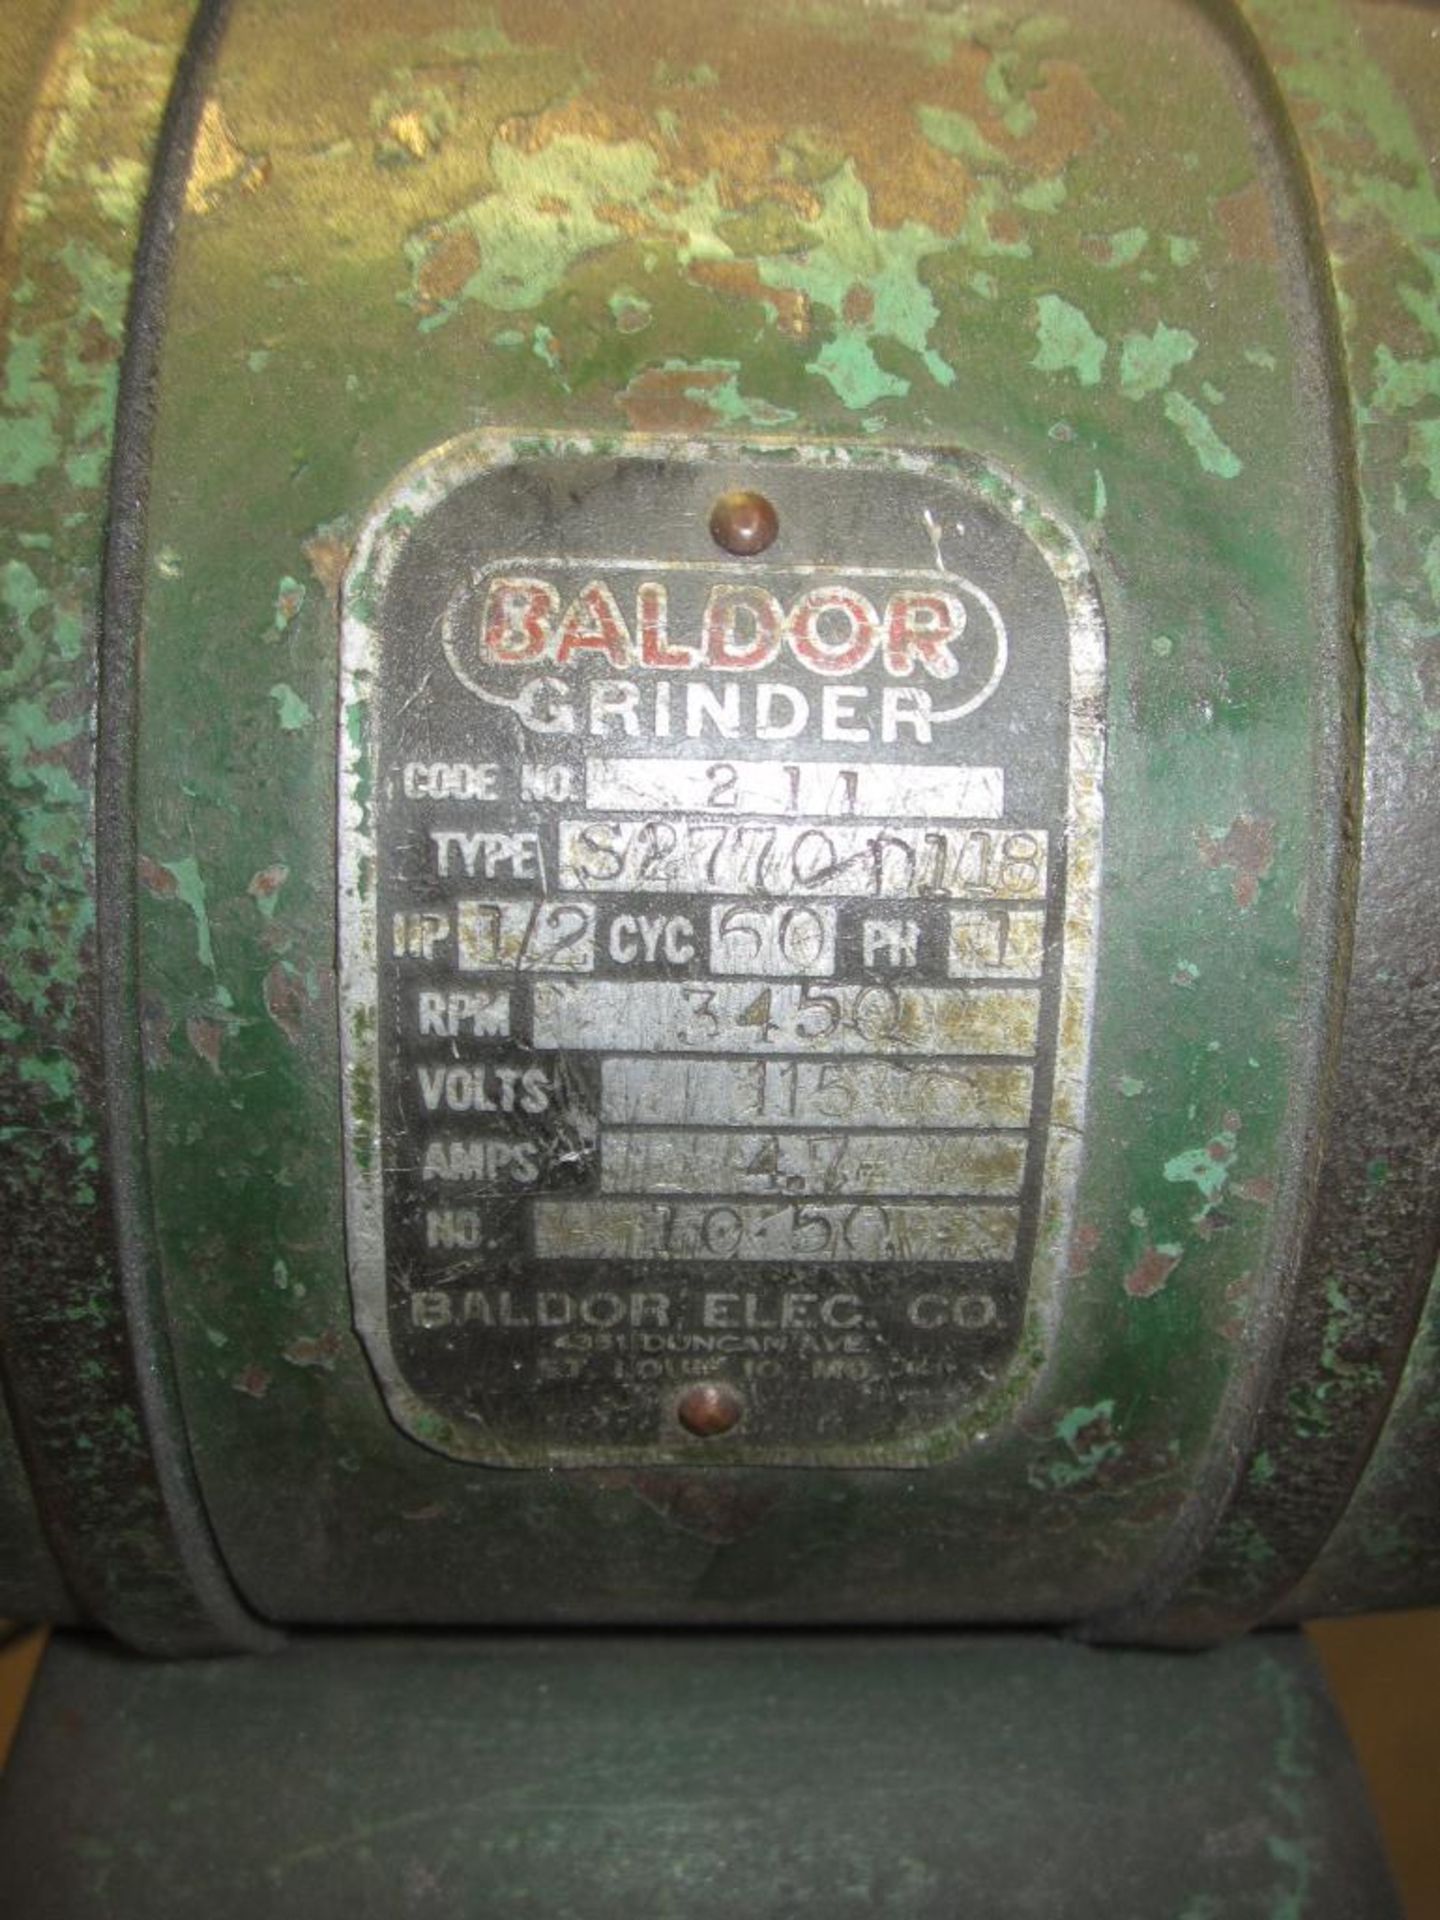 Baldor grinder - Image 3 of 5